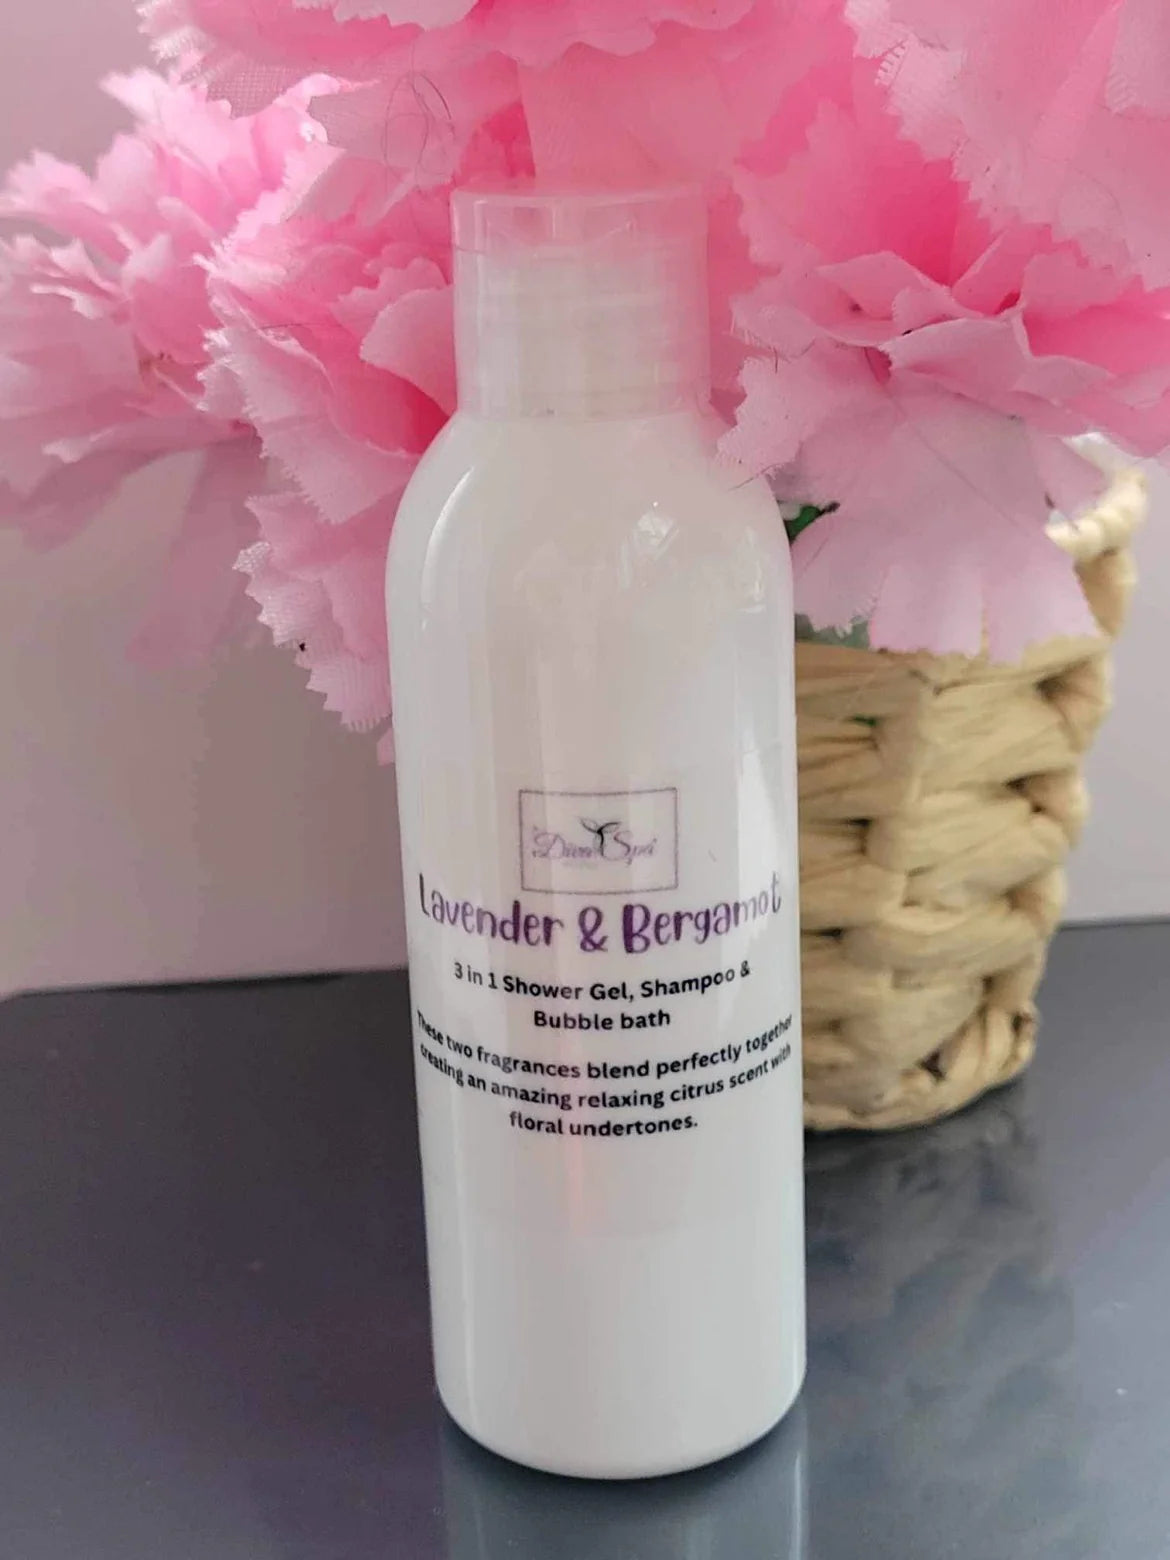 Lavender & Bergamot Shampoo, Bubble Bath & Shower Gel 3 in 1